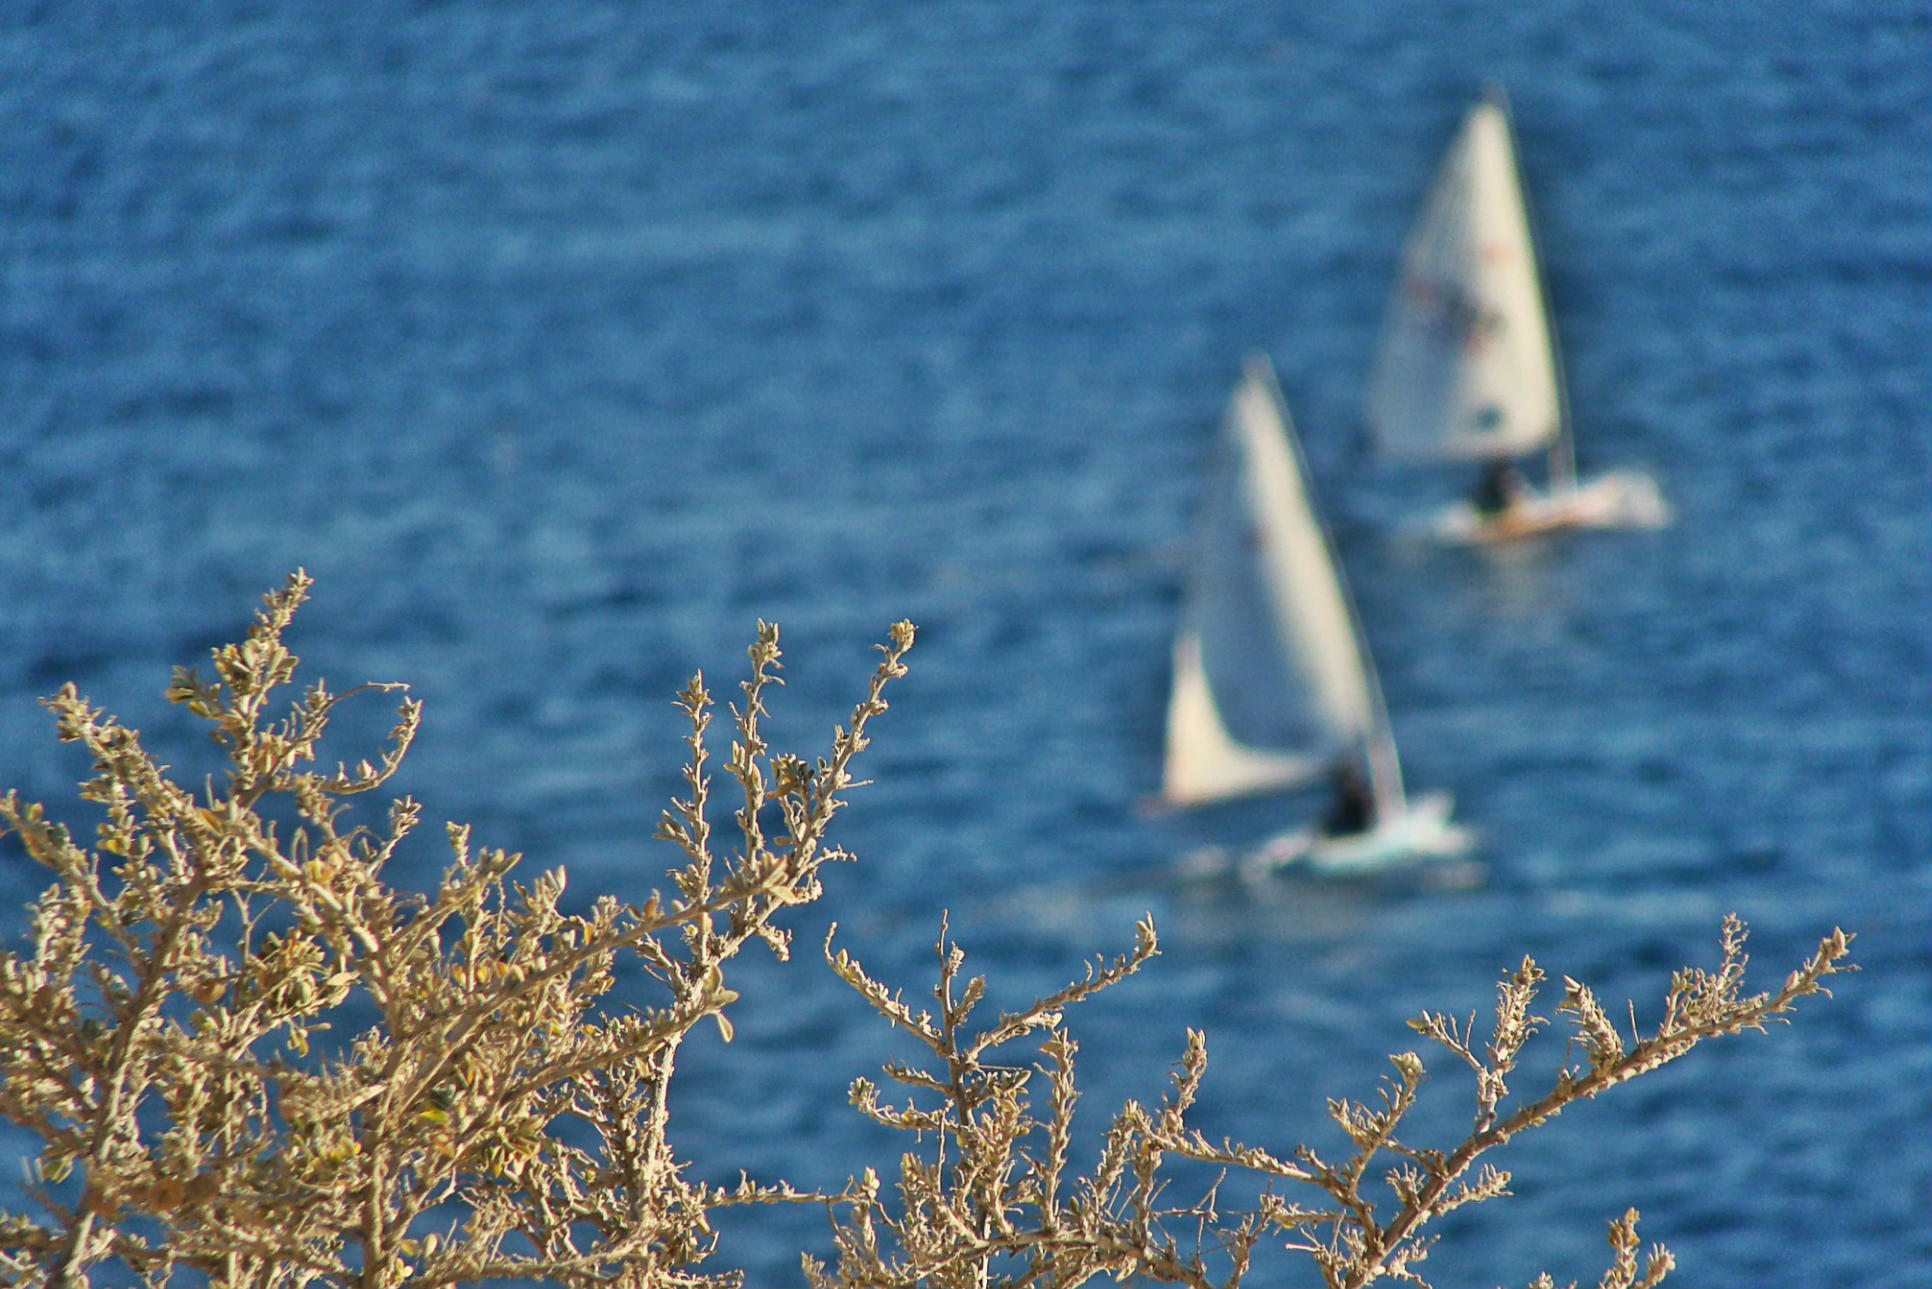 syros_island_sailing_F-438915350.jpg